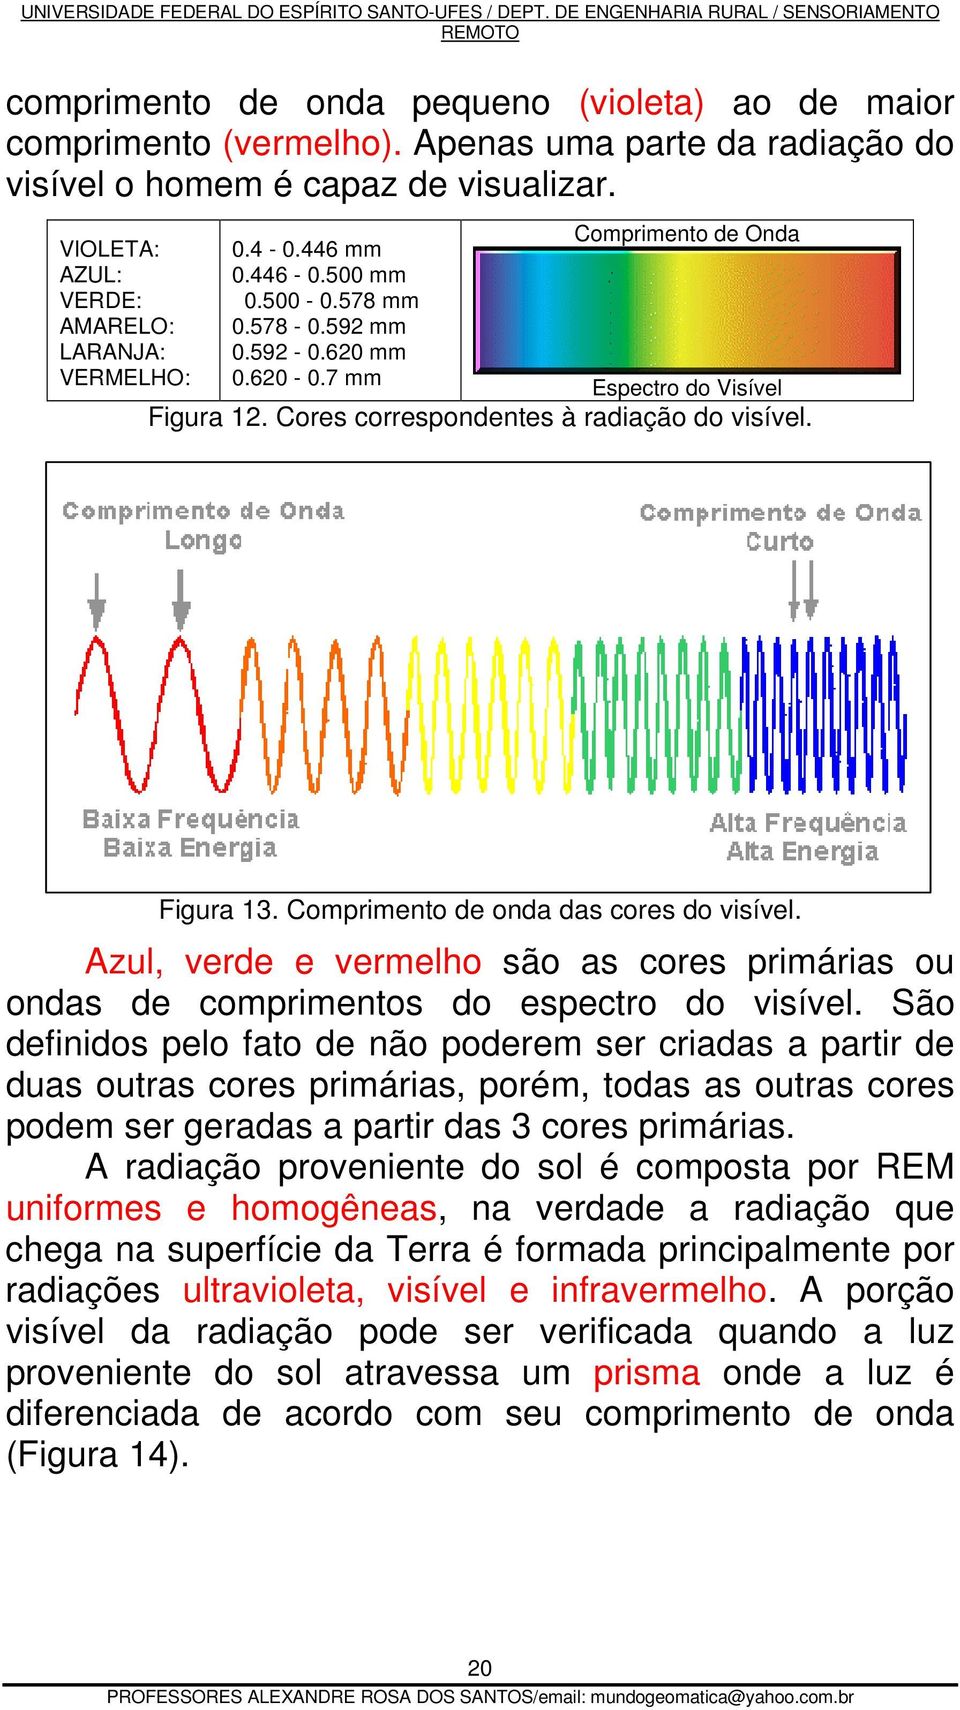 Comprimento de onda das cores do visível. Azul, verde e vermelho são as cores primárias ou ondas de comprimentos do espectro do visível.